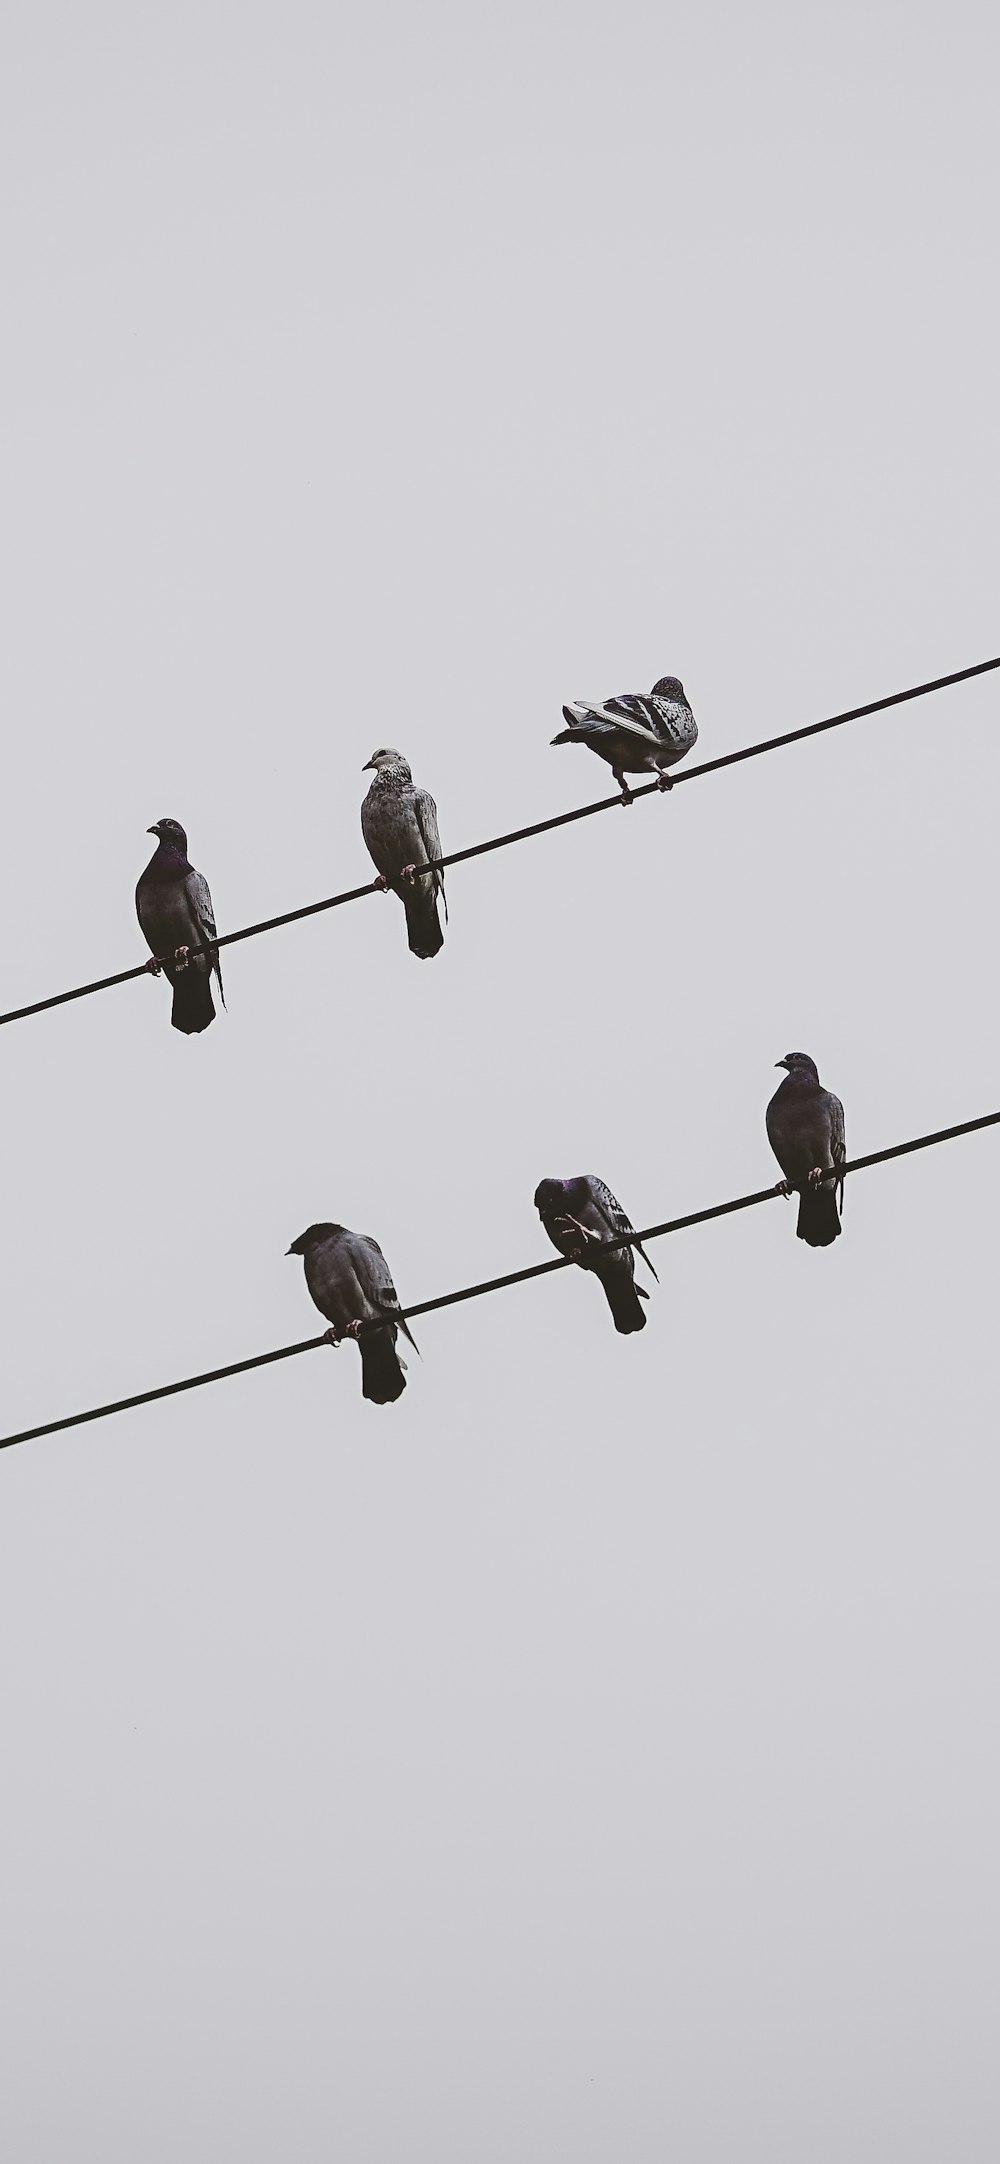 送電線の上に座っている鳥の群れ